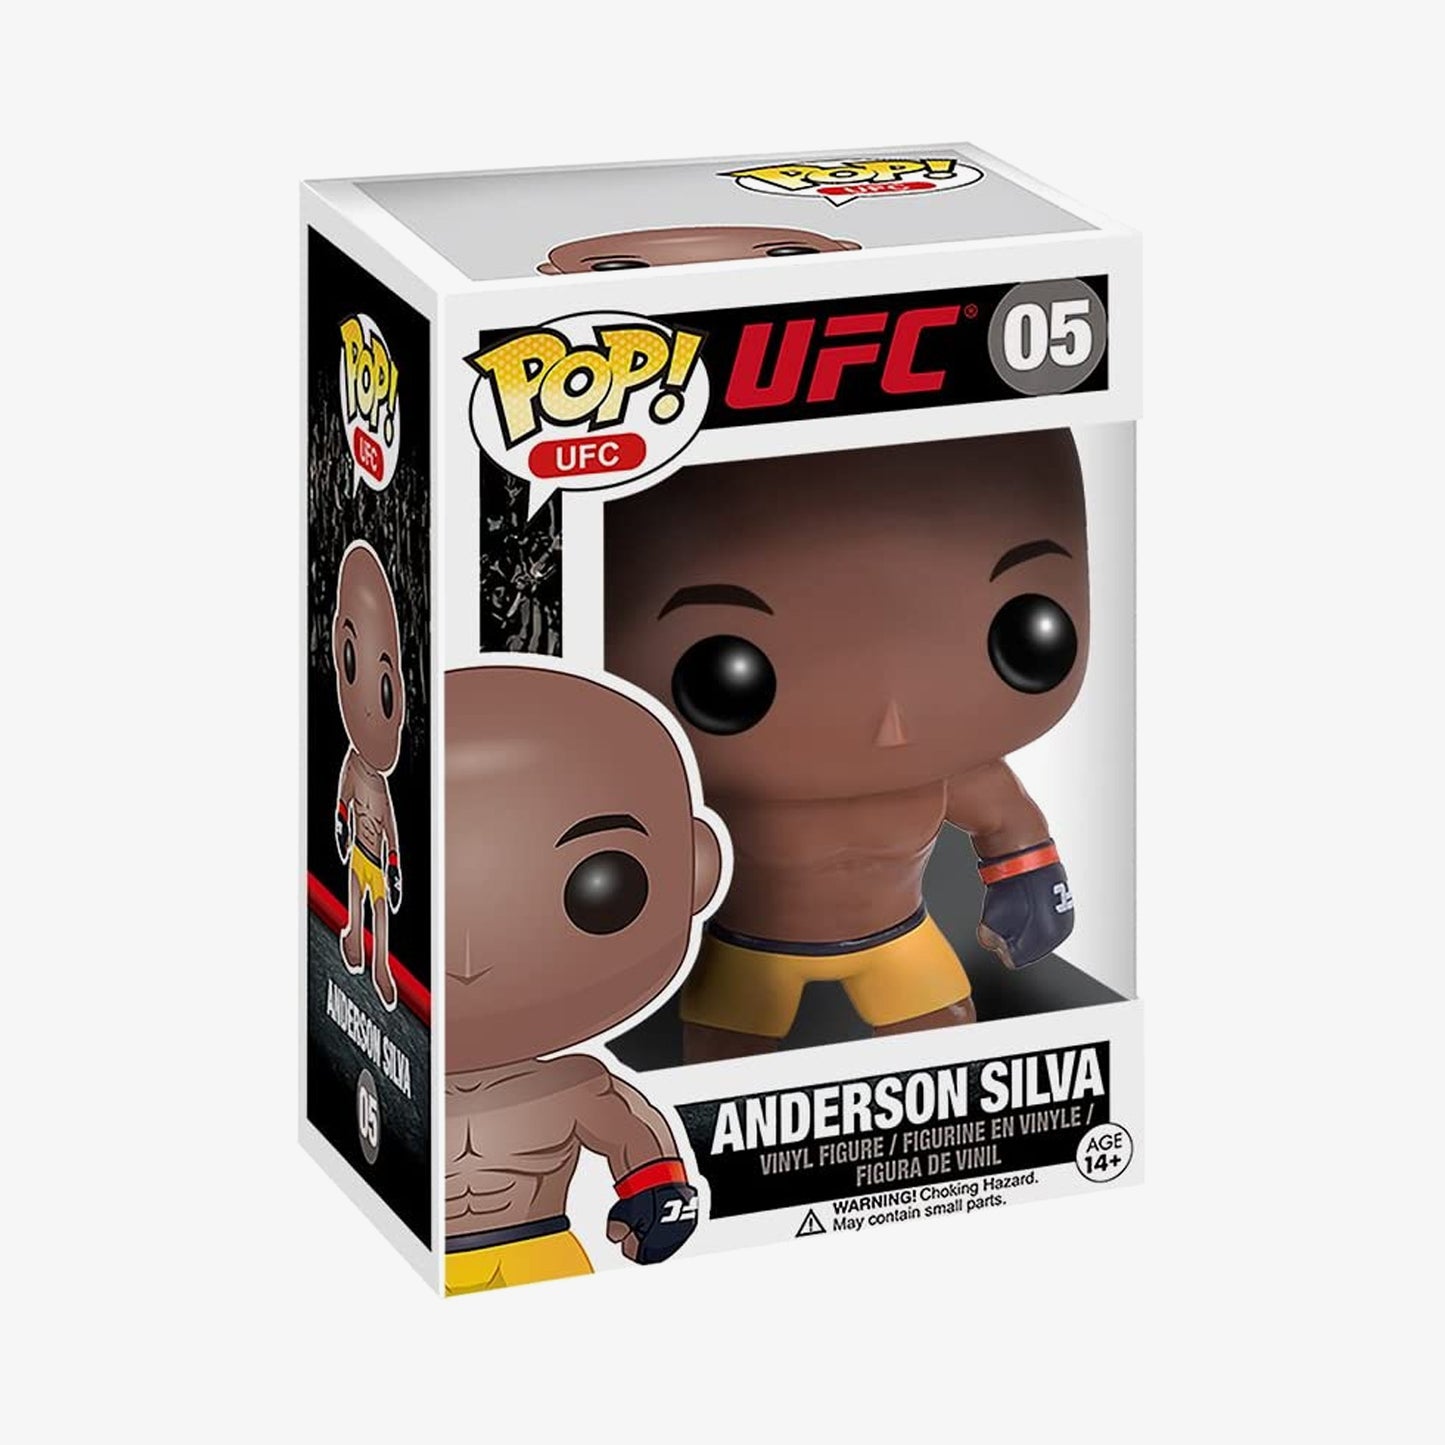 UFC Funko Pop #05 Anderson Silva figure from Fightabilia.com